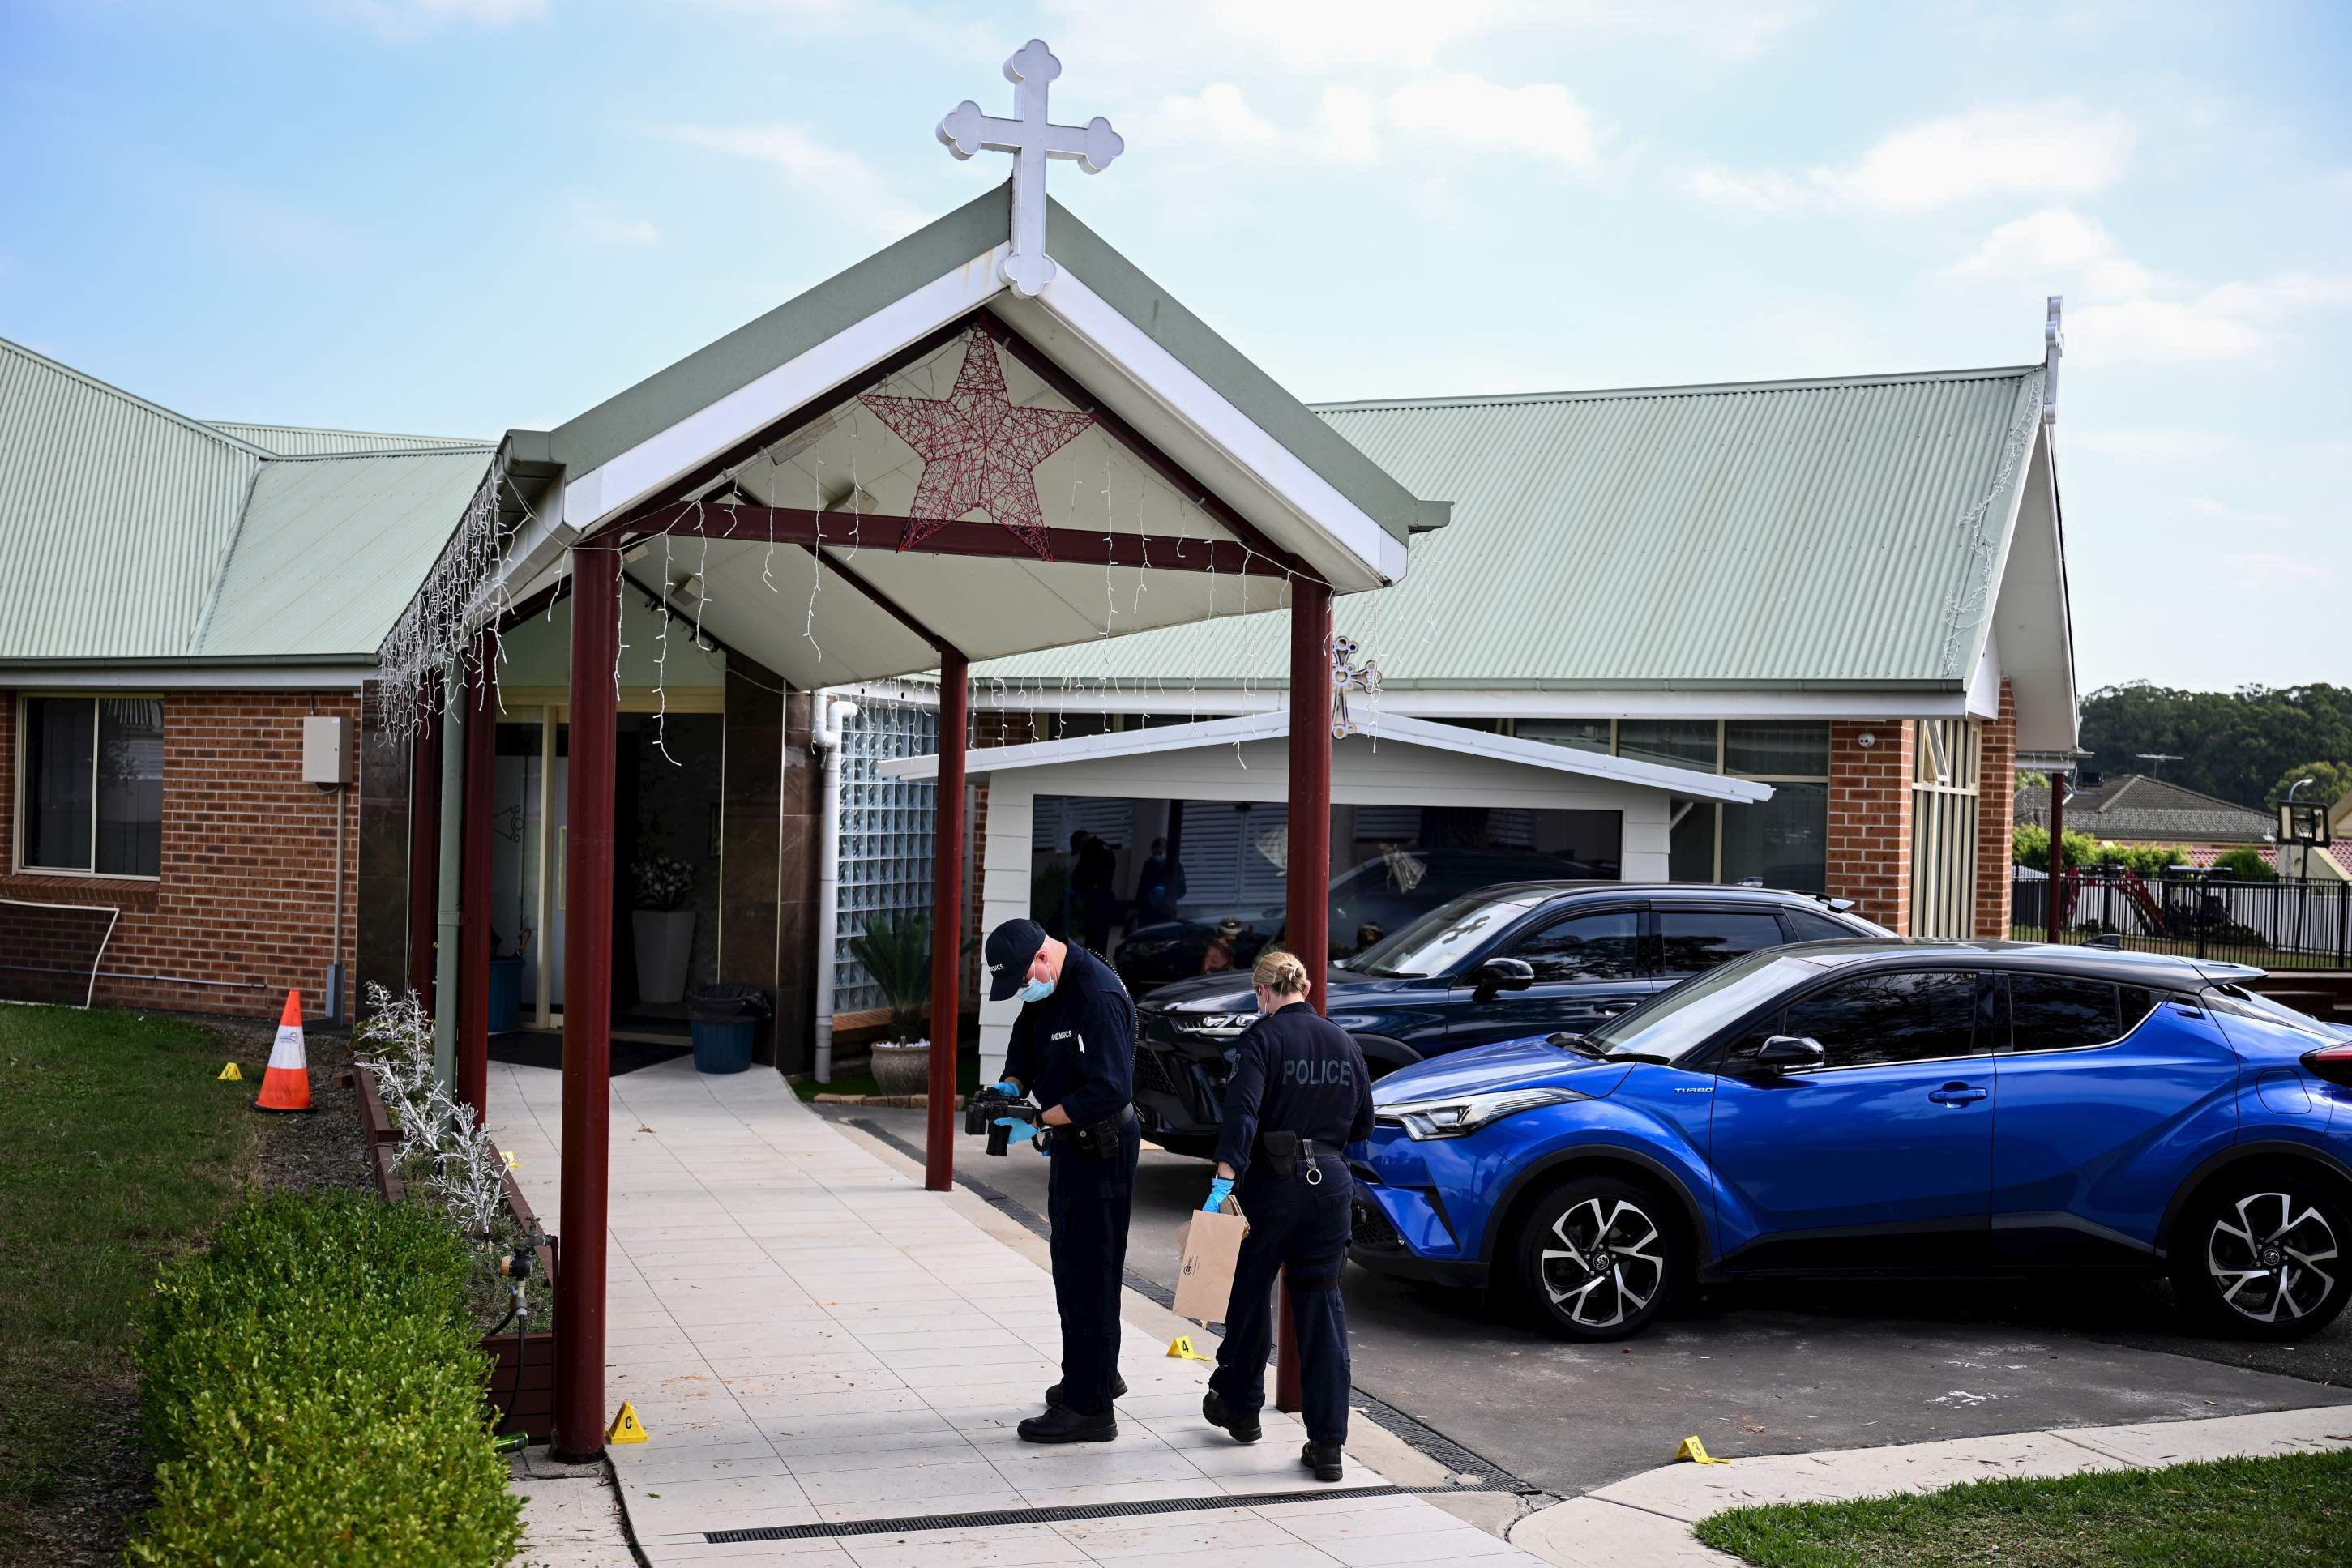 L'apunyalament en una església a Sydney va ser un acte terrorista, segons la policia d'Austràlia